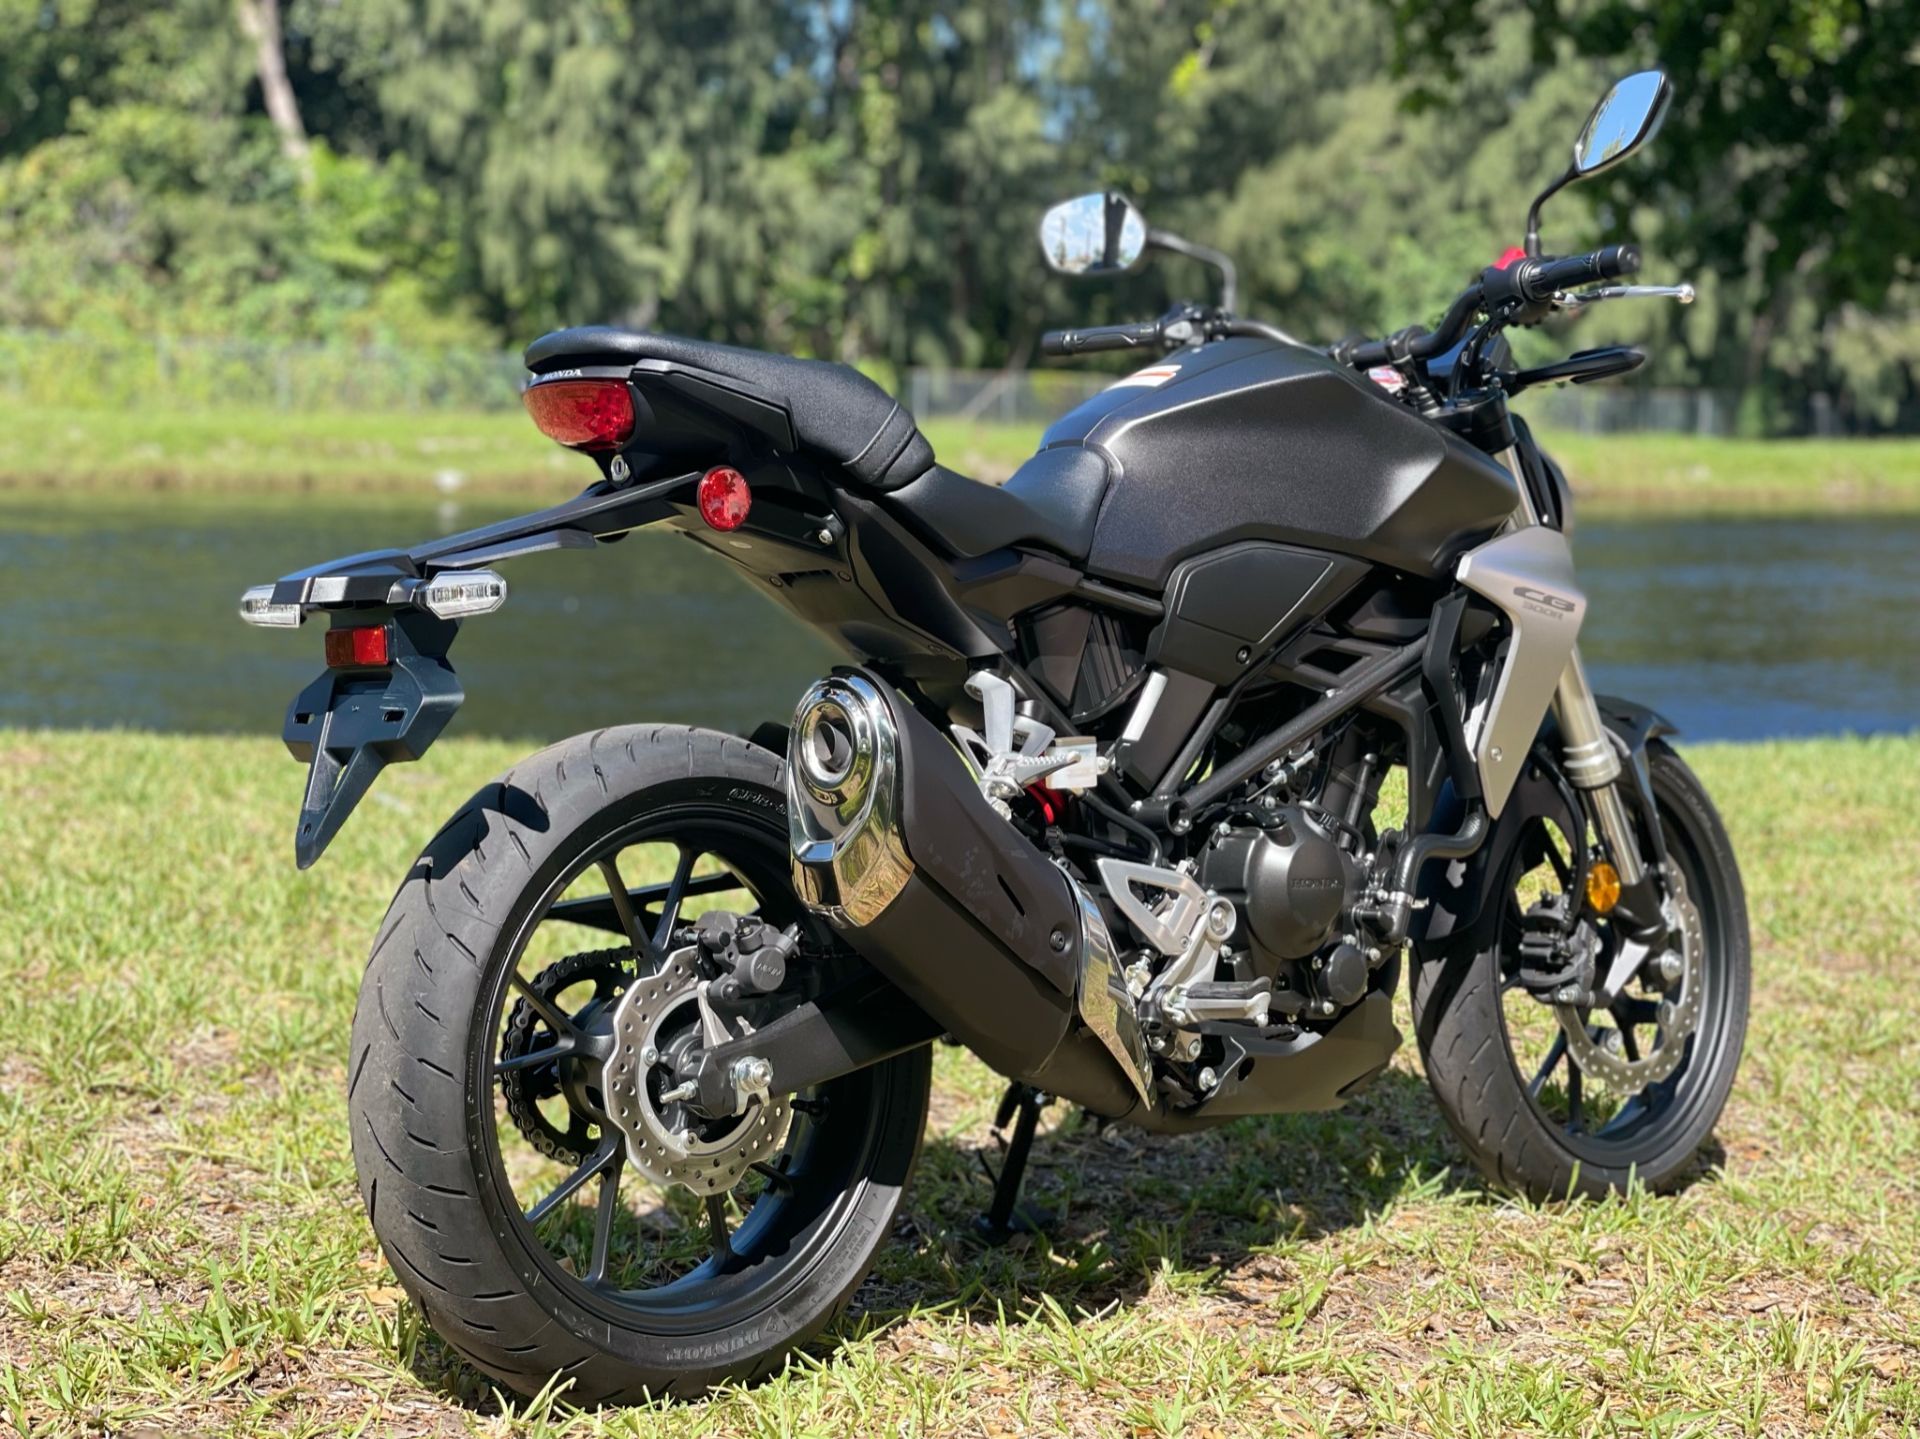 2019 Honda CB300R in North Miami Beach, Florida - Photo 3